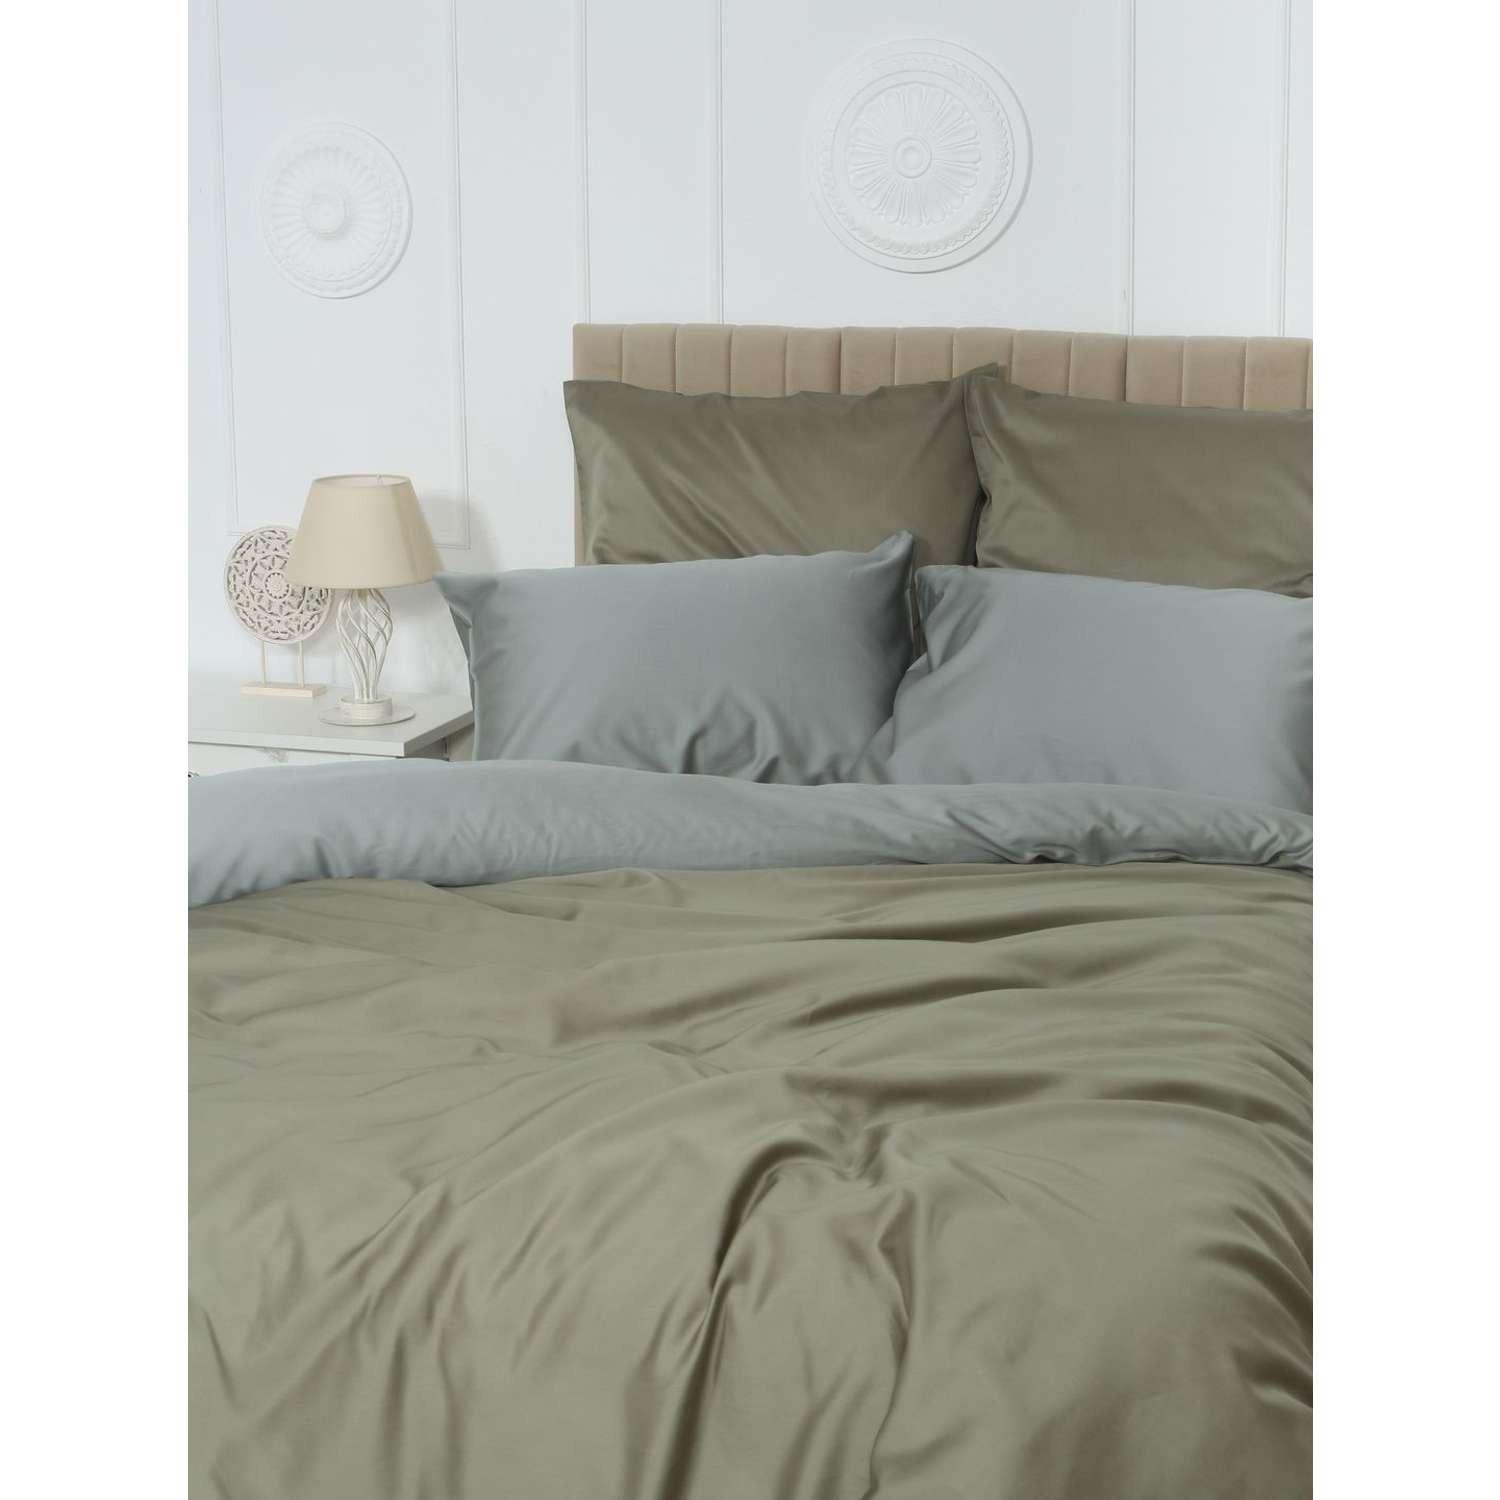 Комплект постельного белья Mona Liza 2 спальный ML Luxury sage тенсель лиоцелл шалфей/камень - фото 2